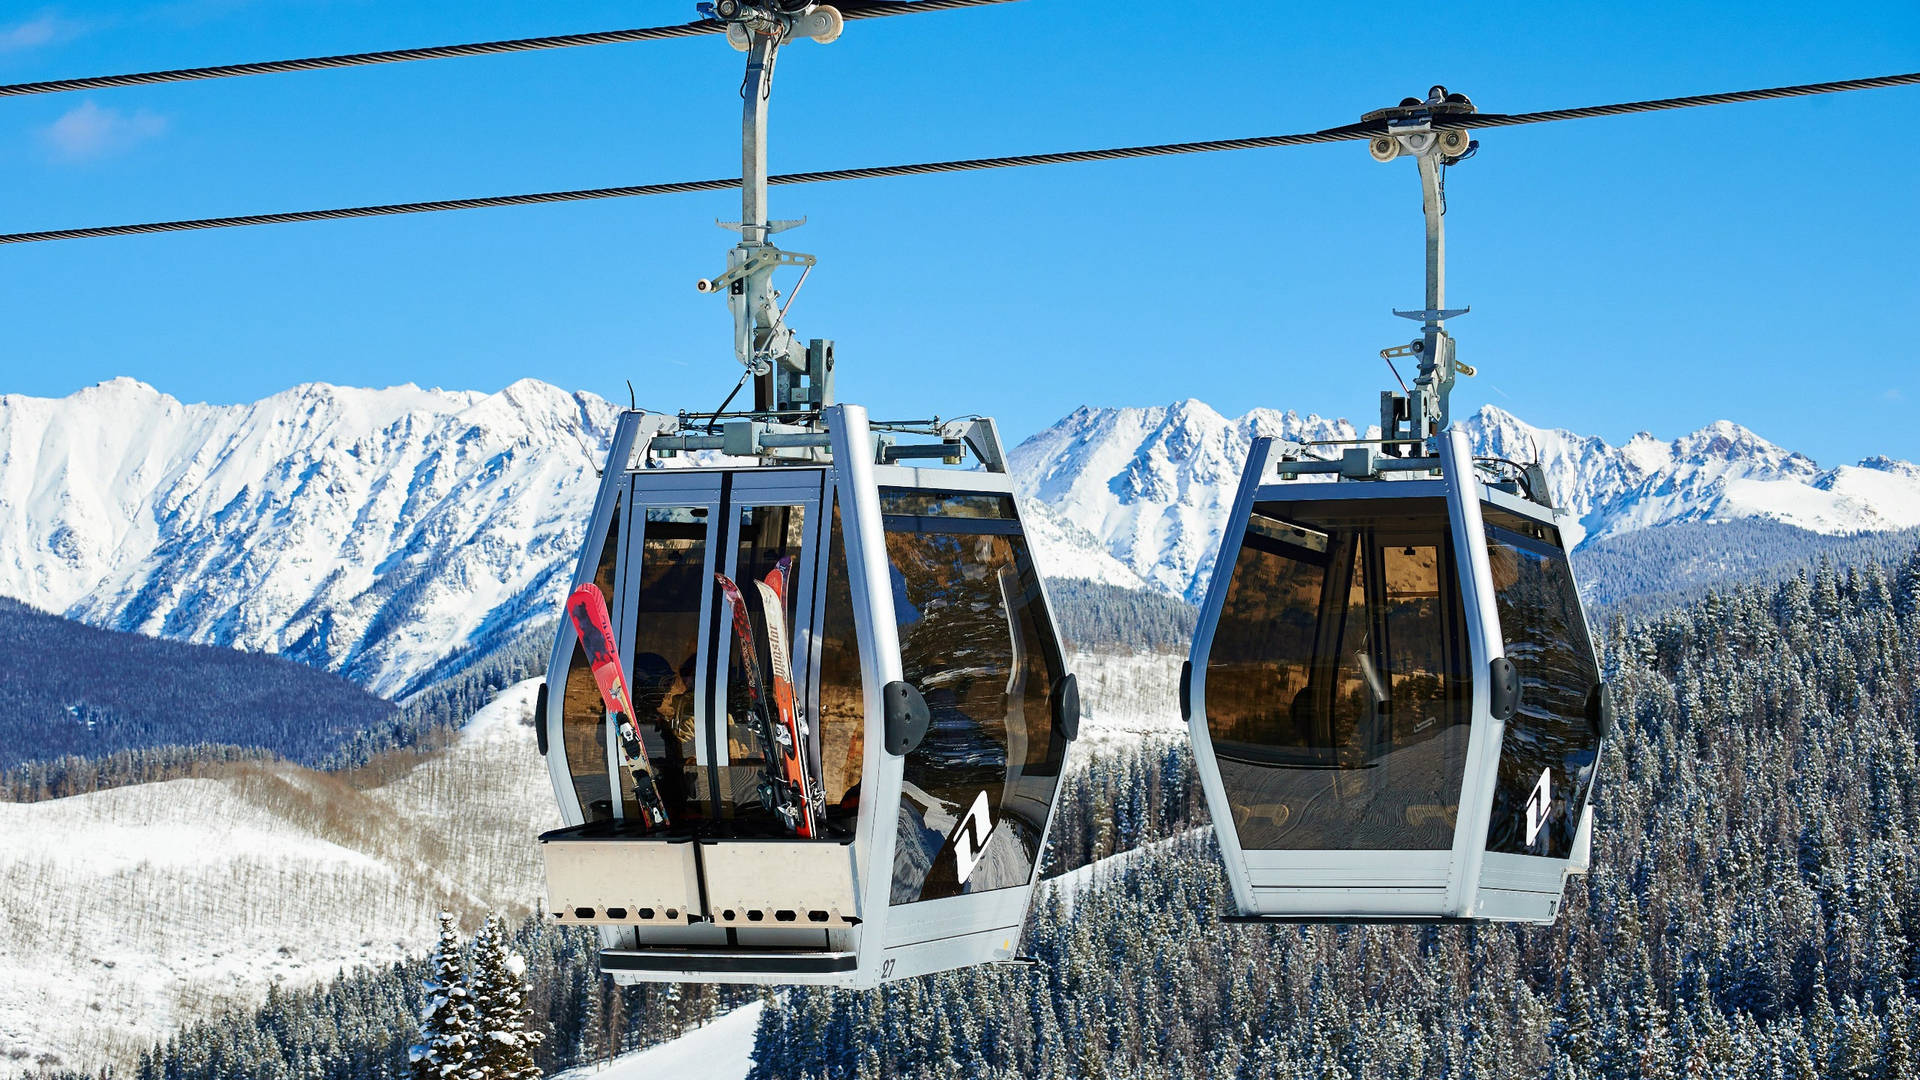 Vail Colorado Gondola Lifts